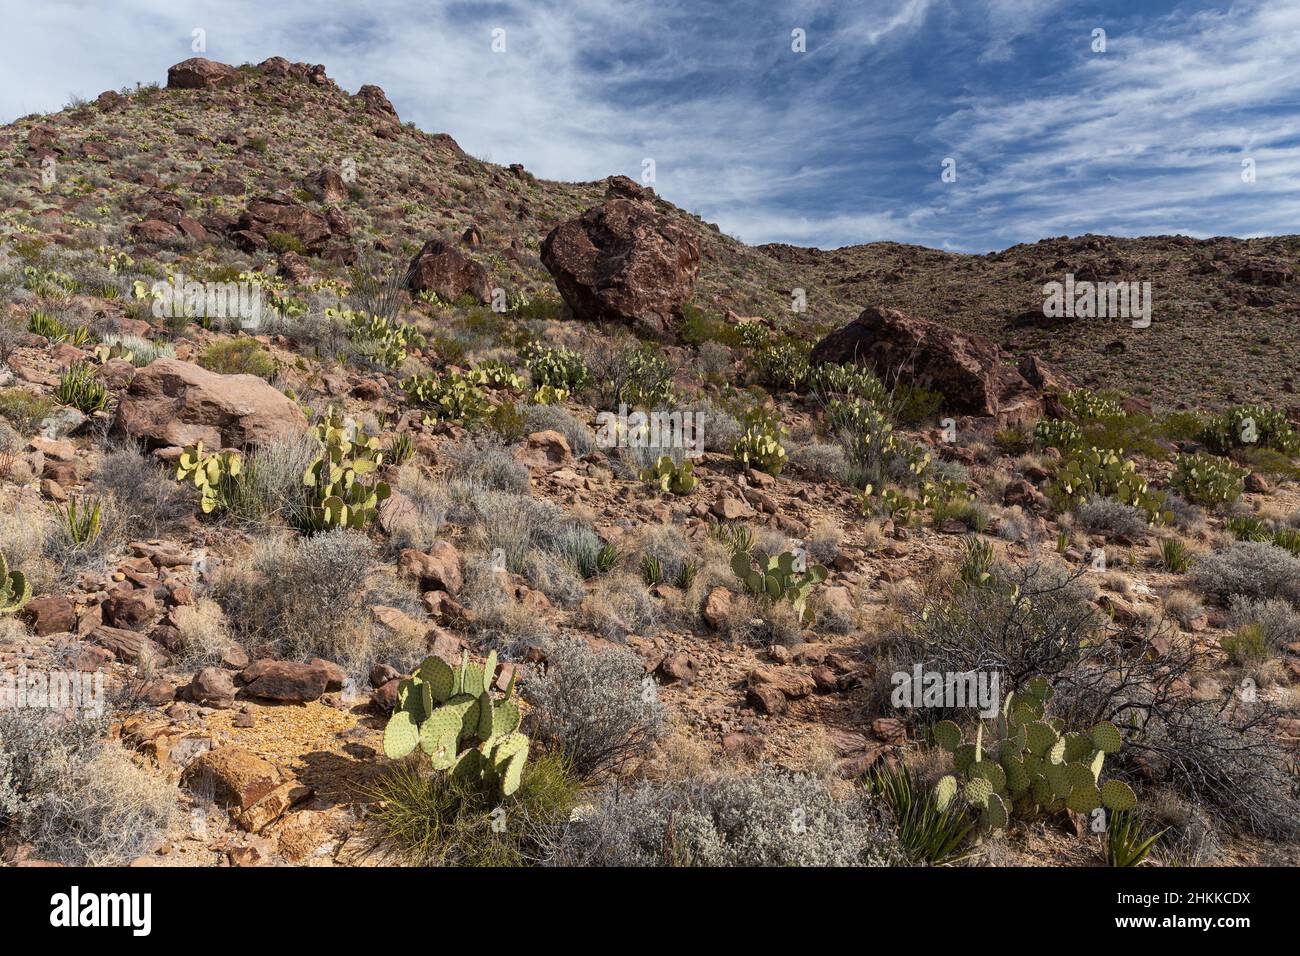 Las grandes rocas se desploman en una colina cubierta de vegetación del desierto de Chihuahua. Foto de stock